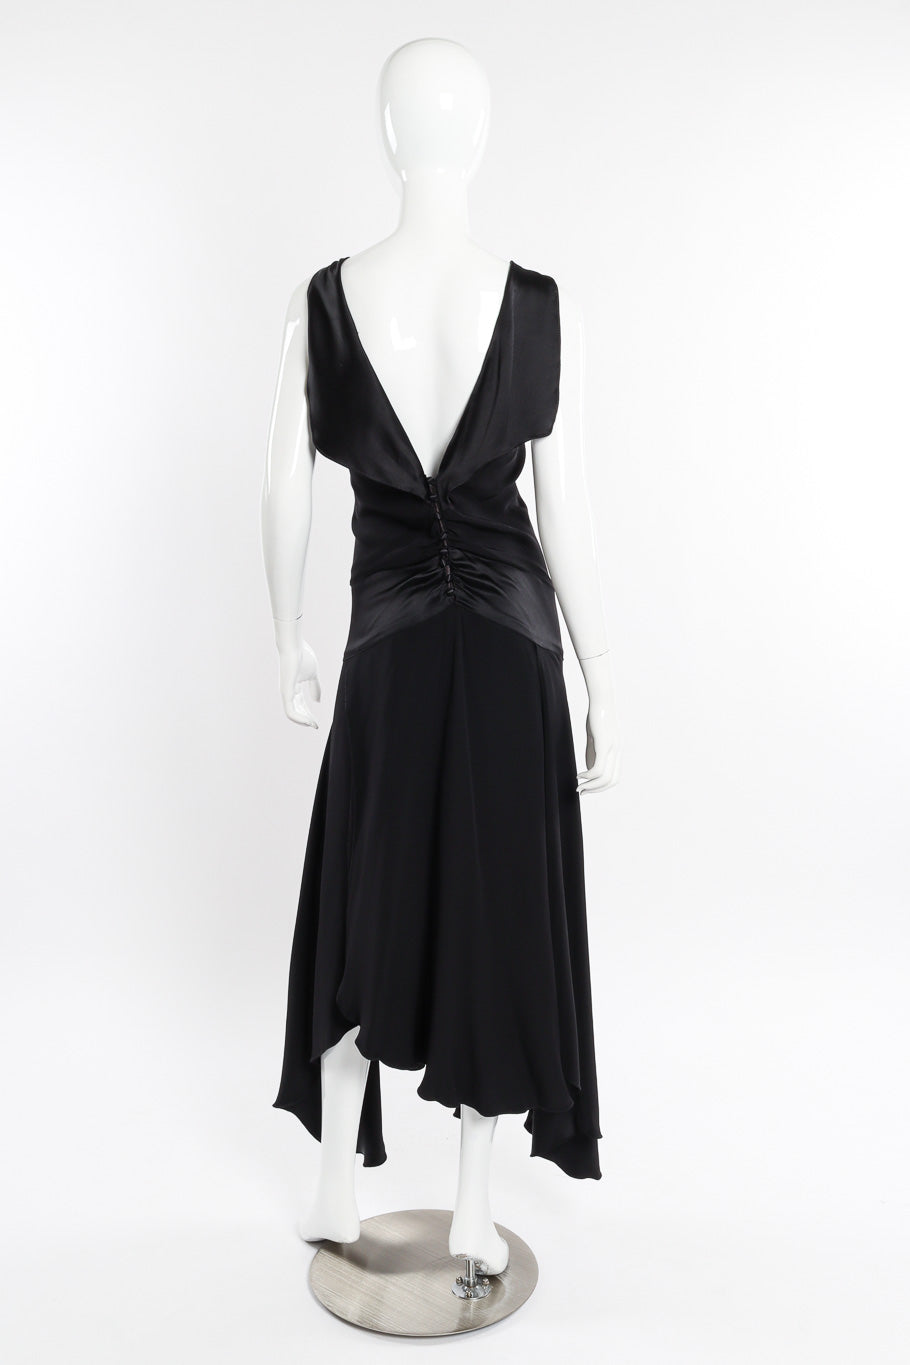 Flutter dress by Eavis & Brown on mannequin back @recessla